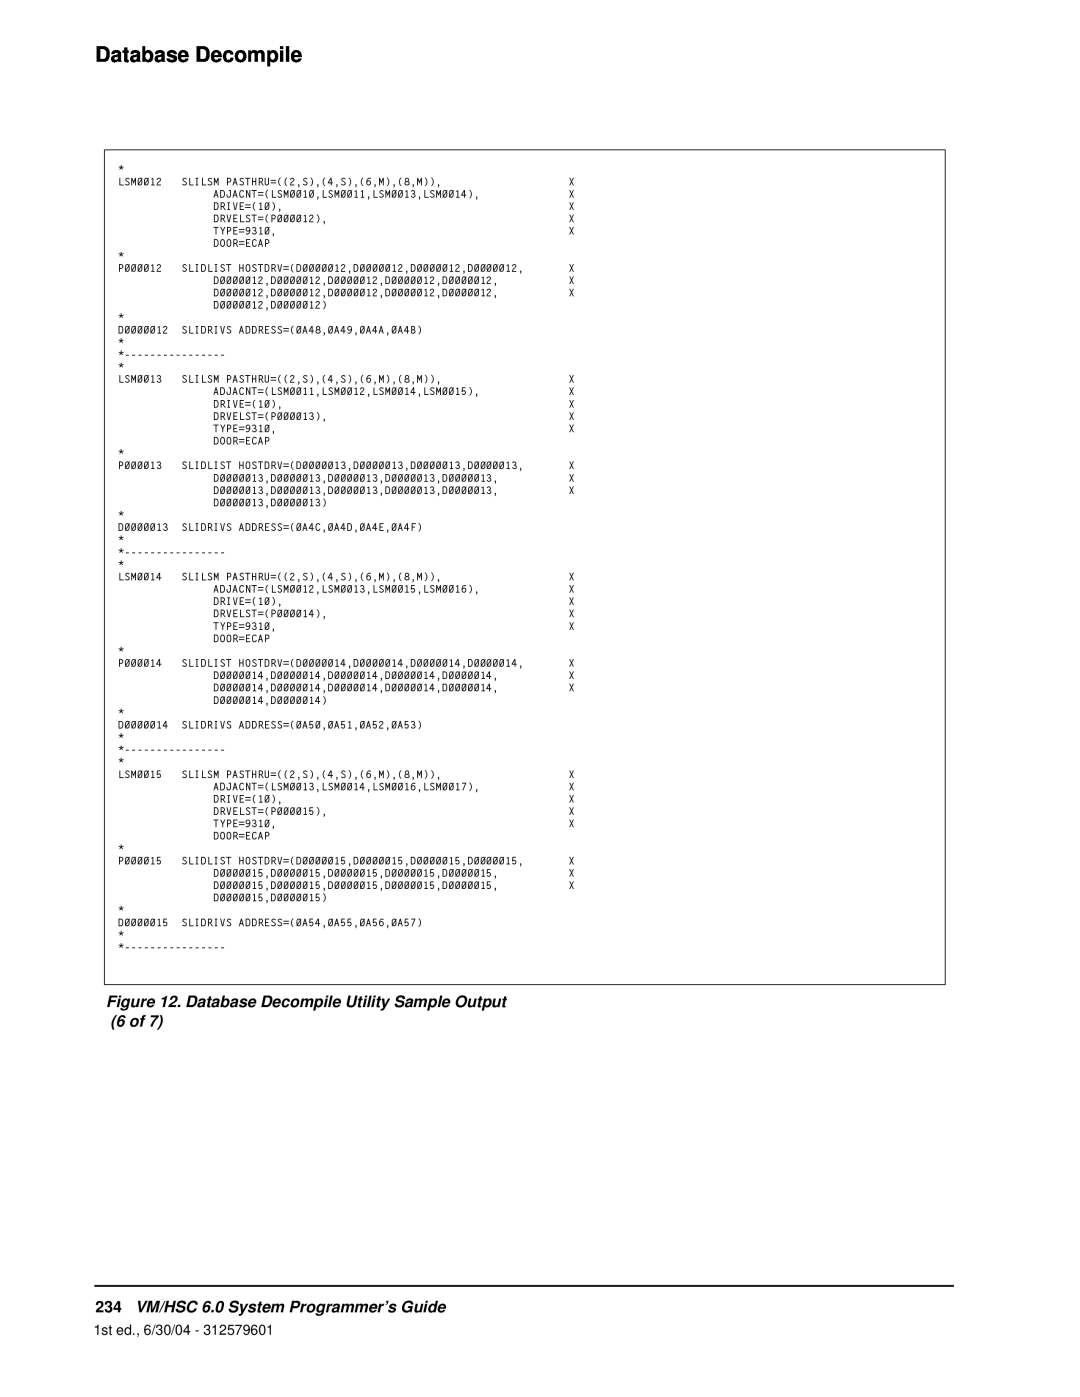 StorageTek manual Database Decompile, 234VM/HSC 6.0 System Programmer’s Guide, 1st ed., 6/30/04 